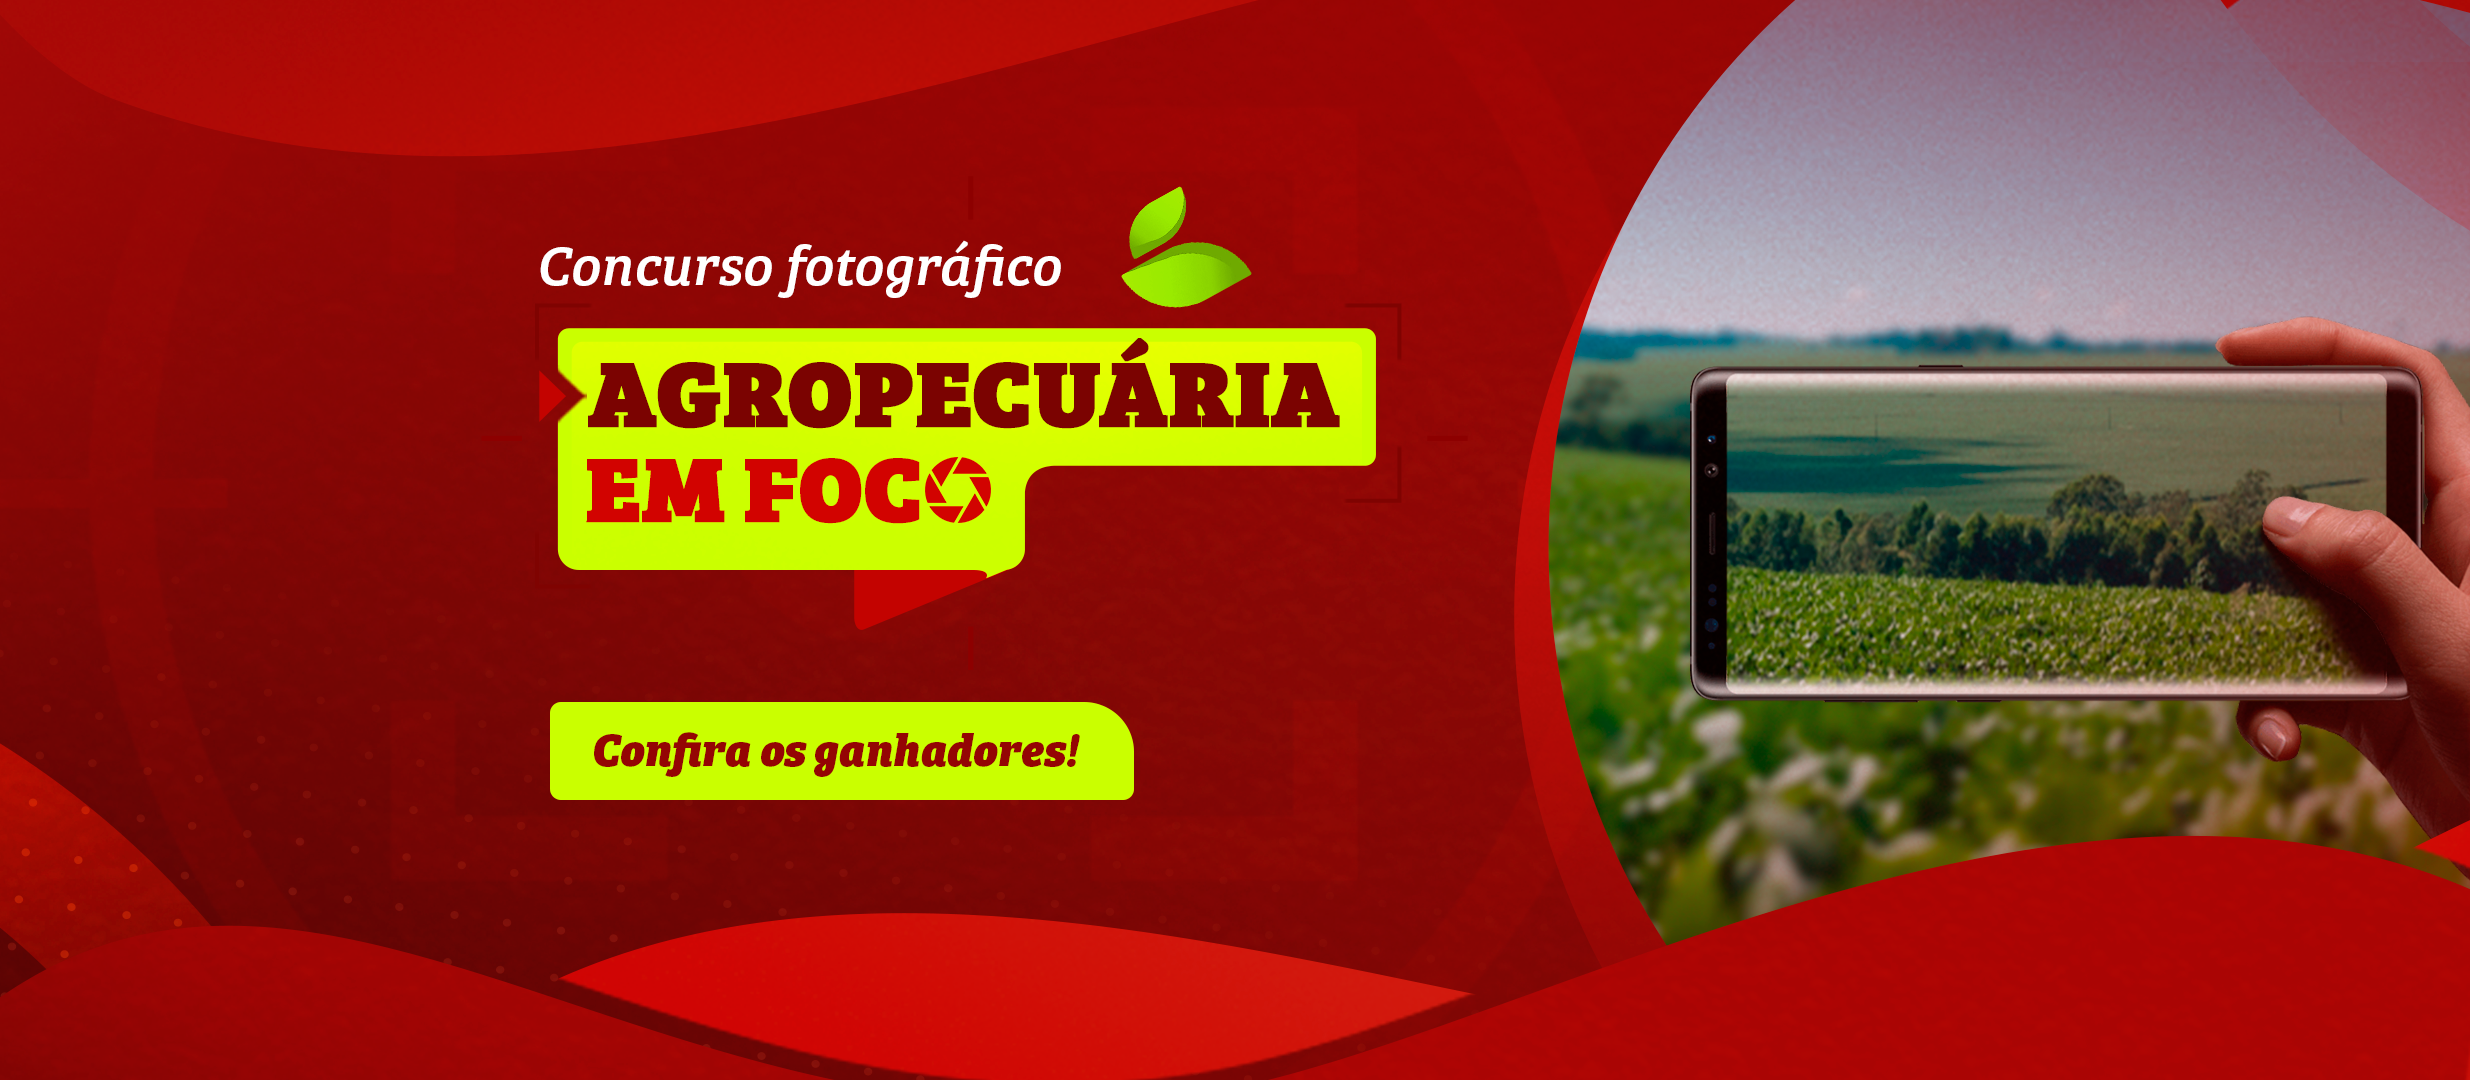 Conheça os premiados no I Concurso Fotográfico Agropecuária em Foco